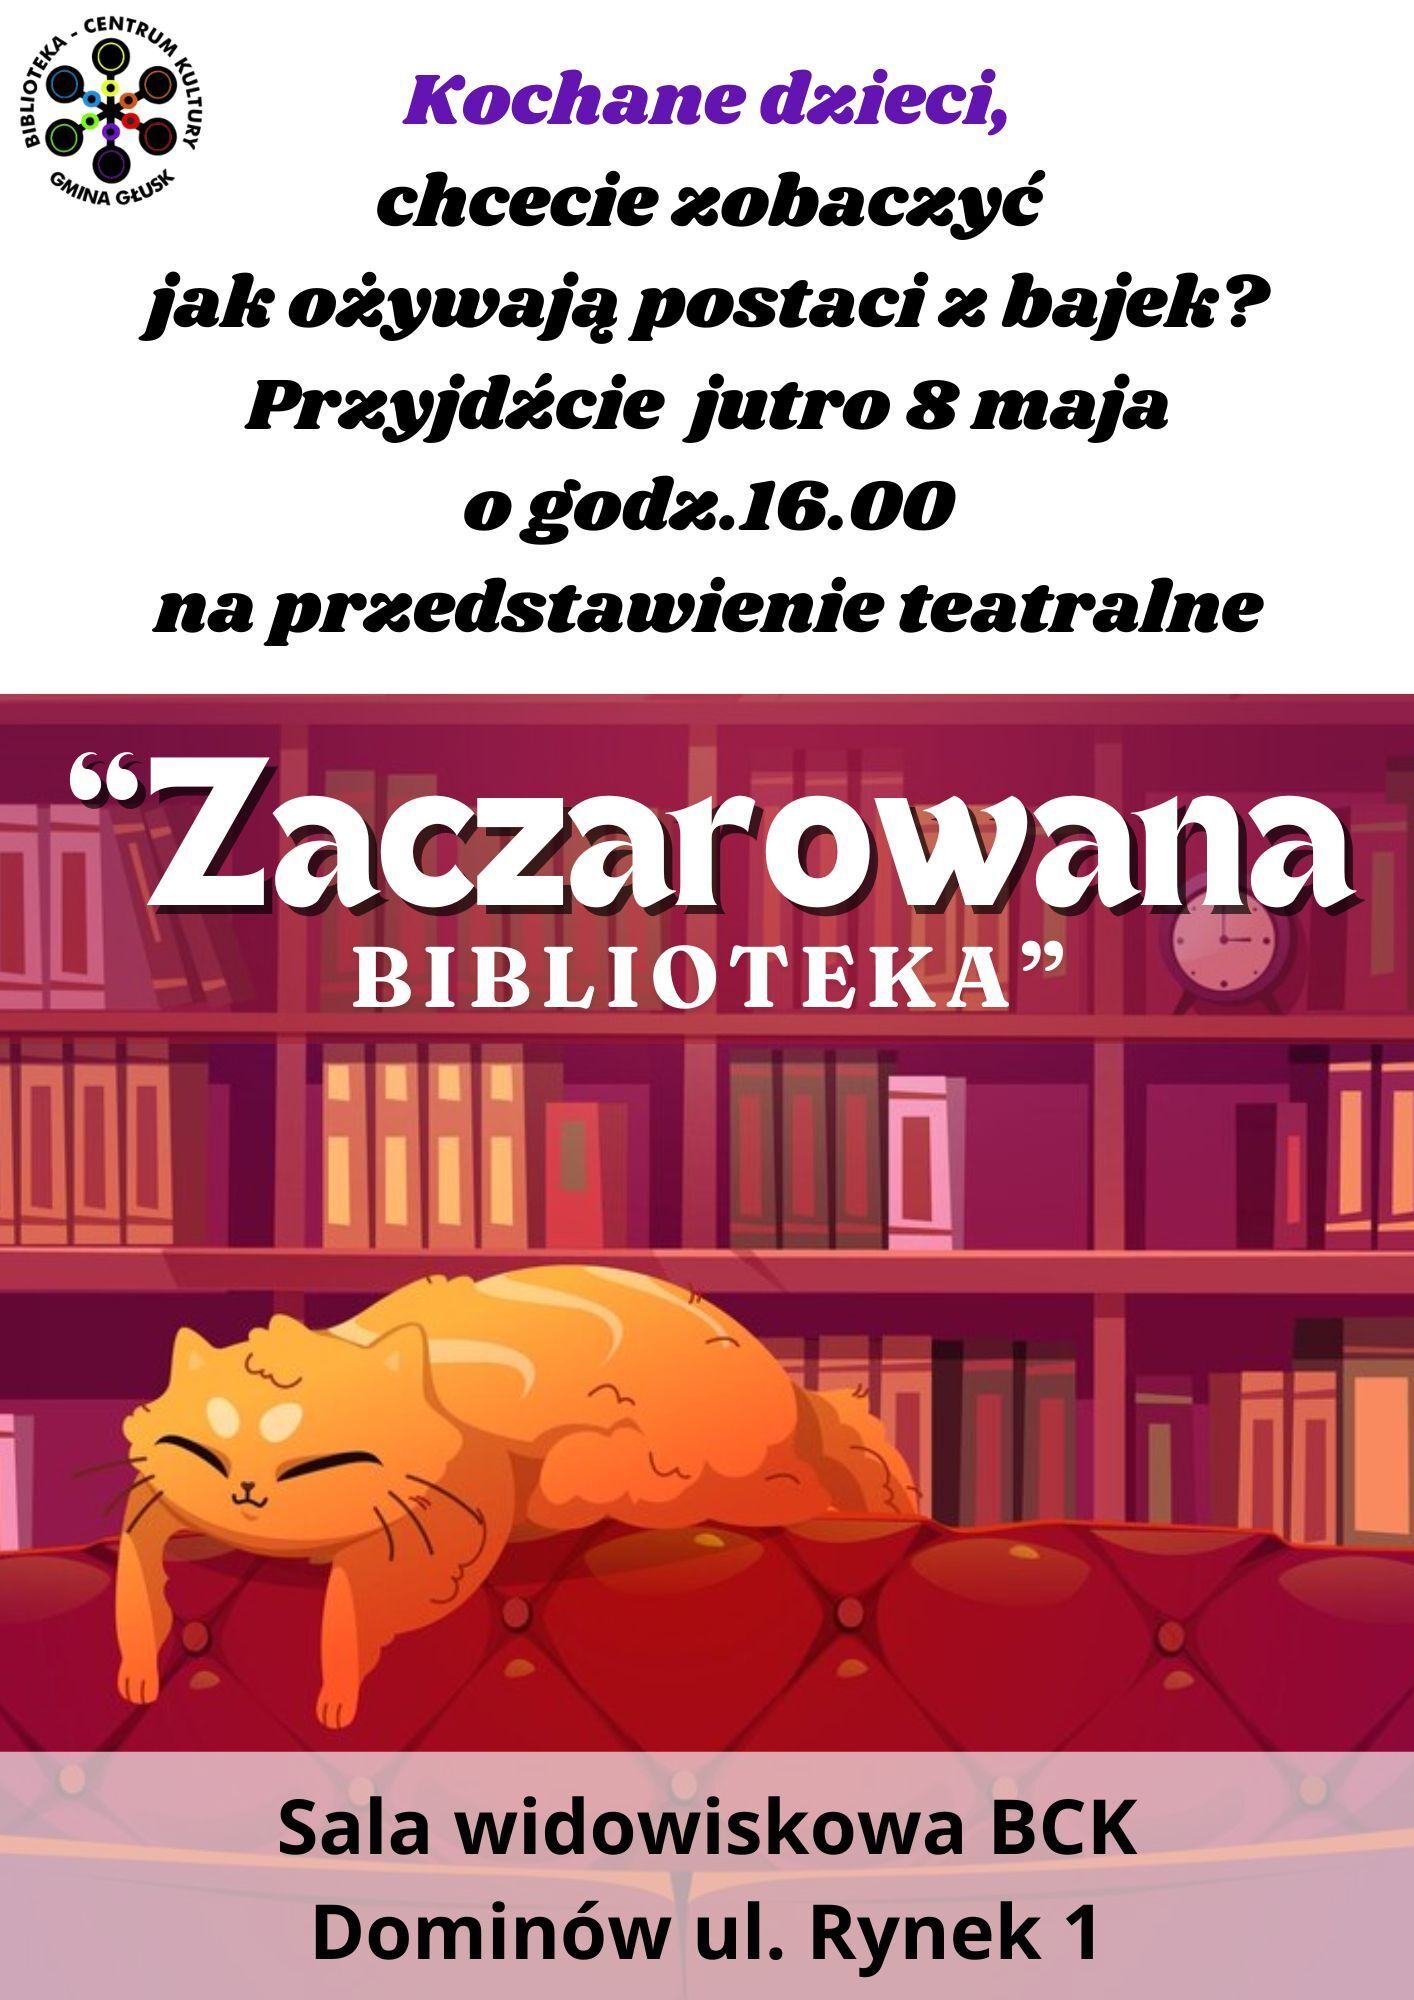 Plakat informacyjny wydarzenia dla dzieci z dużym, pomarańczowym kotem śpiącym na stercie książek w bibliotece, z informacjami o wydarzeniu Zaczarowana Biblioteka